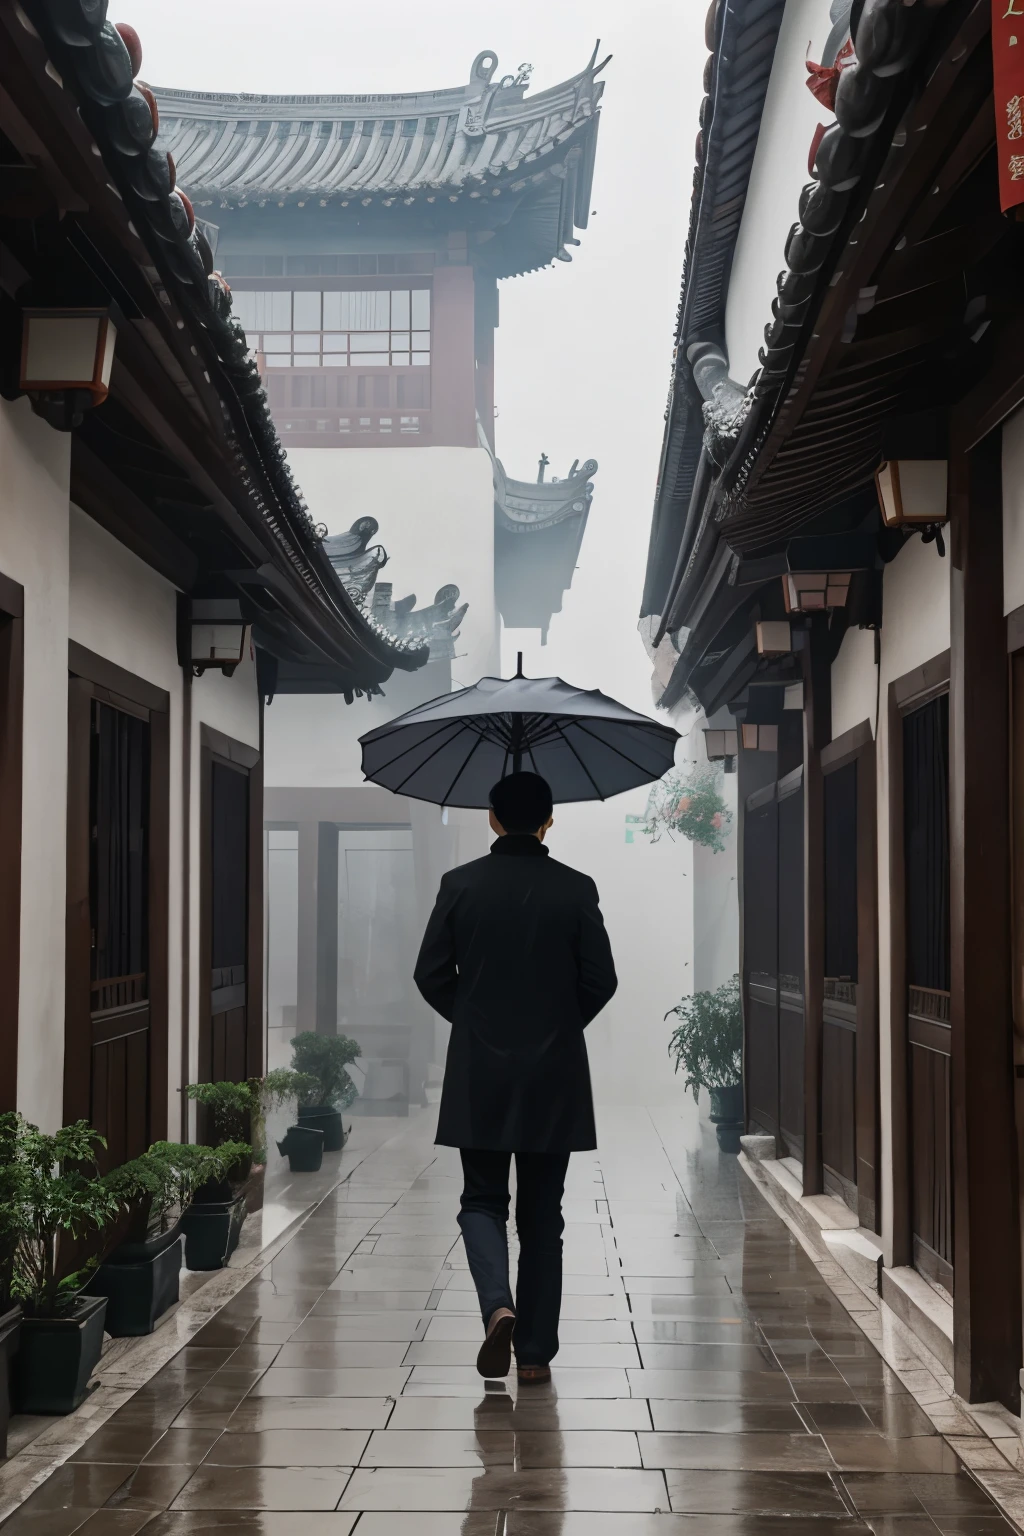 Тяньцзинский дворик, Старый дом семьи Шэн，Вокруг туманно, моросит дождь，Мужчина с черным зонтиком высокий и стройный.，Глаза острые и спокойные，Туман под дождем — это все равно, что смотреть на цветы сквозь туман..。